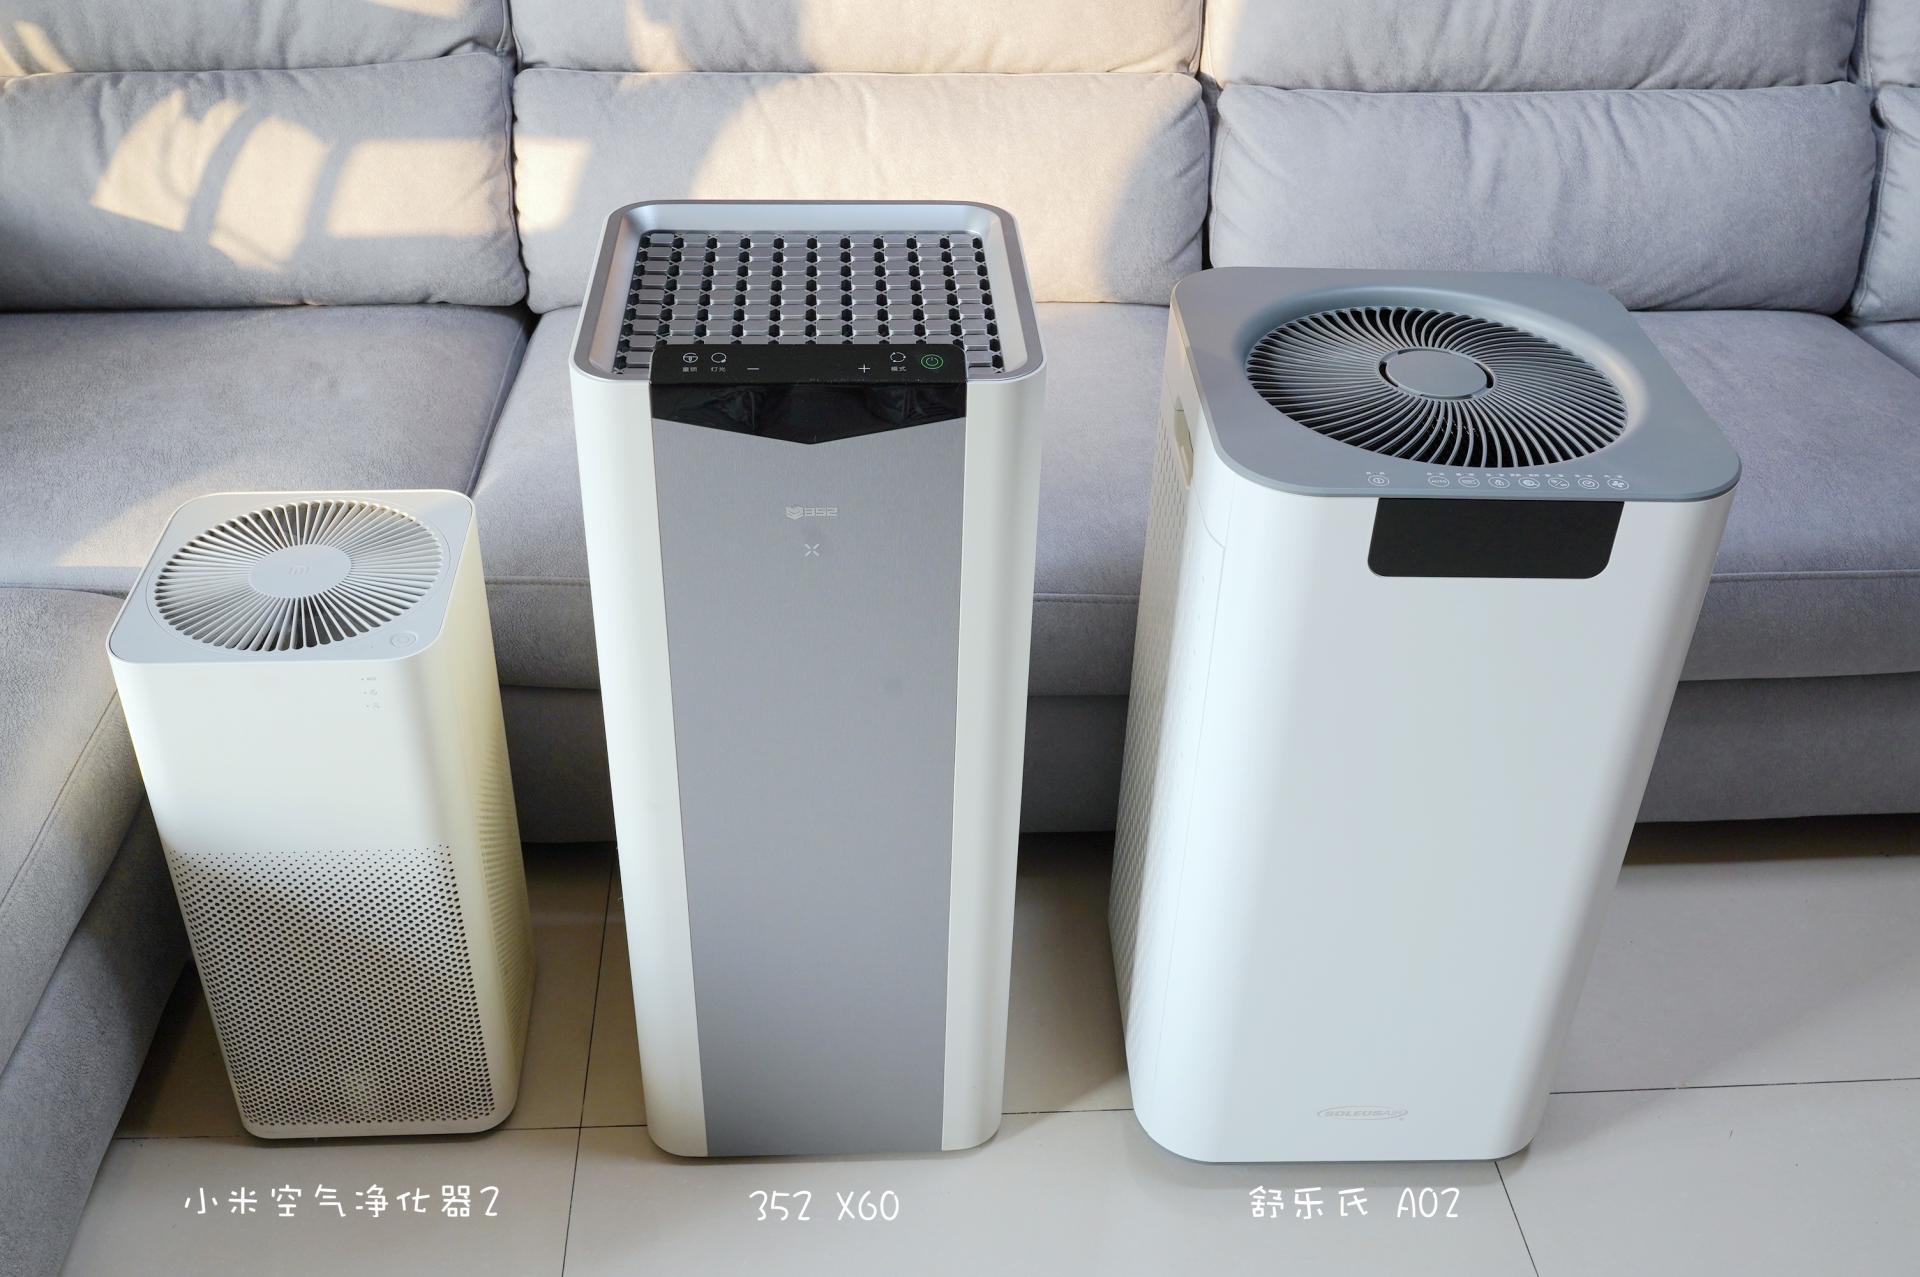 三台空气净化器实现全屋净化覆盖，附三款空气净化器对比体验